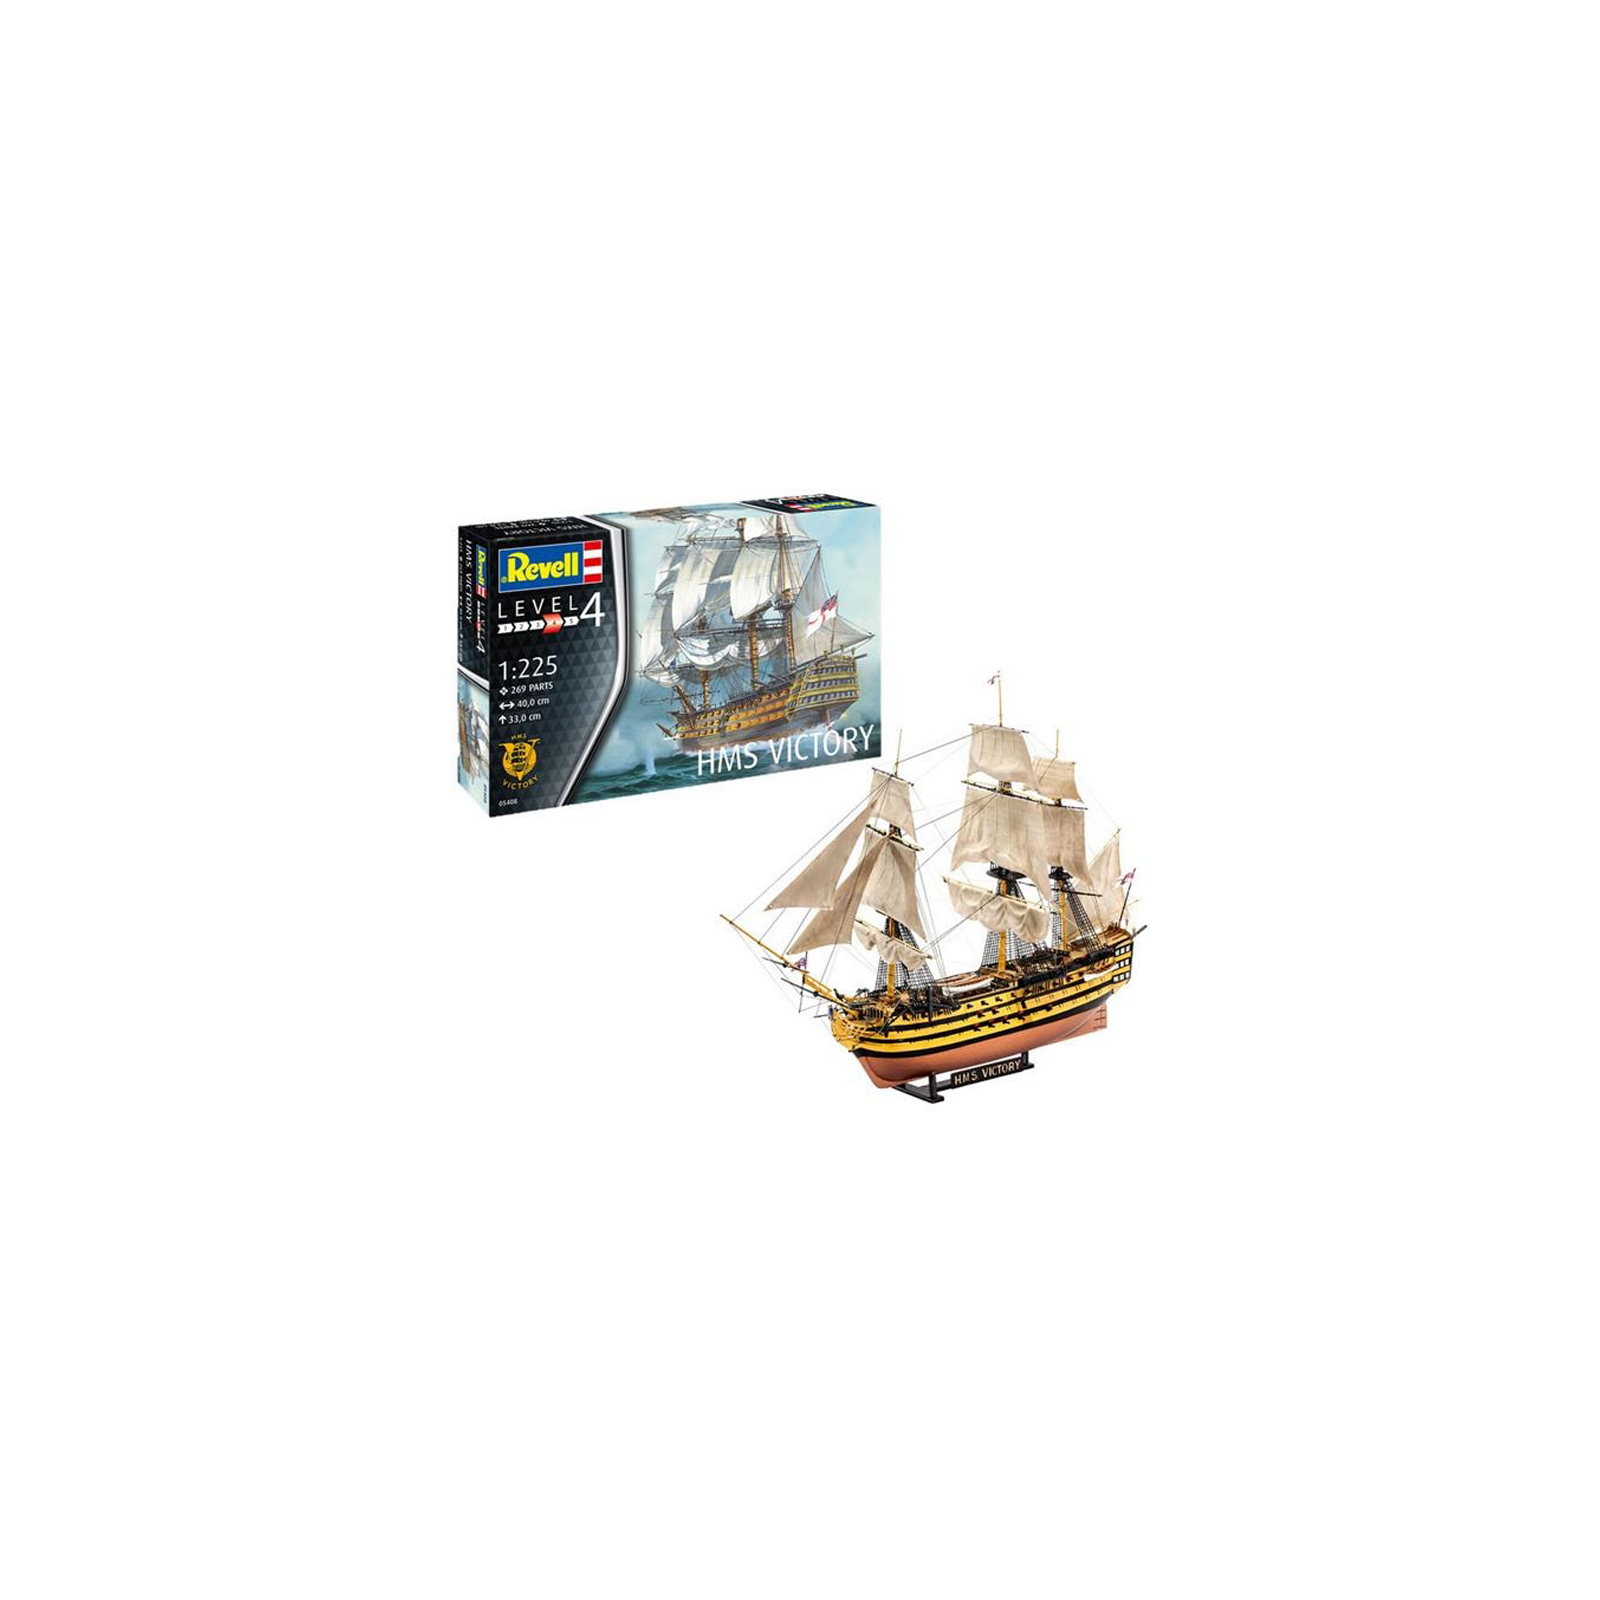 Сборная модель Revell Корабль Его Величества "Победа" уровень 4 масштаб 1:225 (RVL-05408) изображение 2